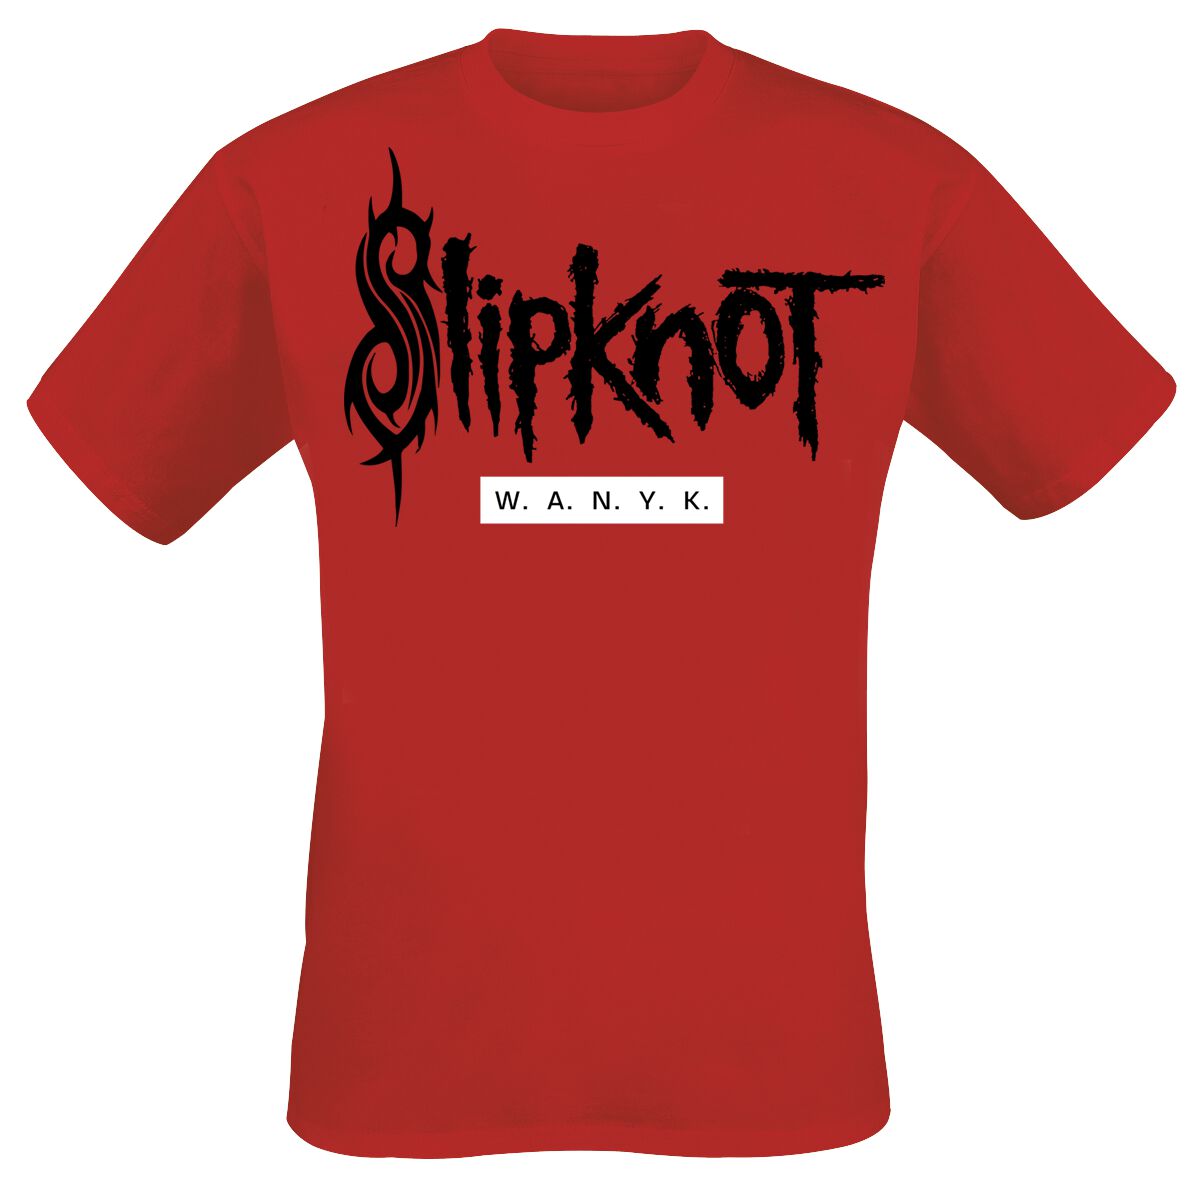 Slipknot T-Shirt - We Are Not Your Kind - M bis 5XL - für Männer - Größe 5XL - rot  - EMP exklusives Merchandise!